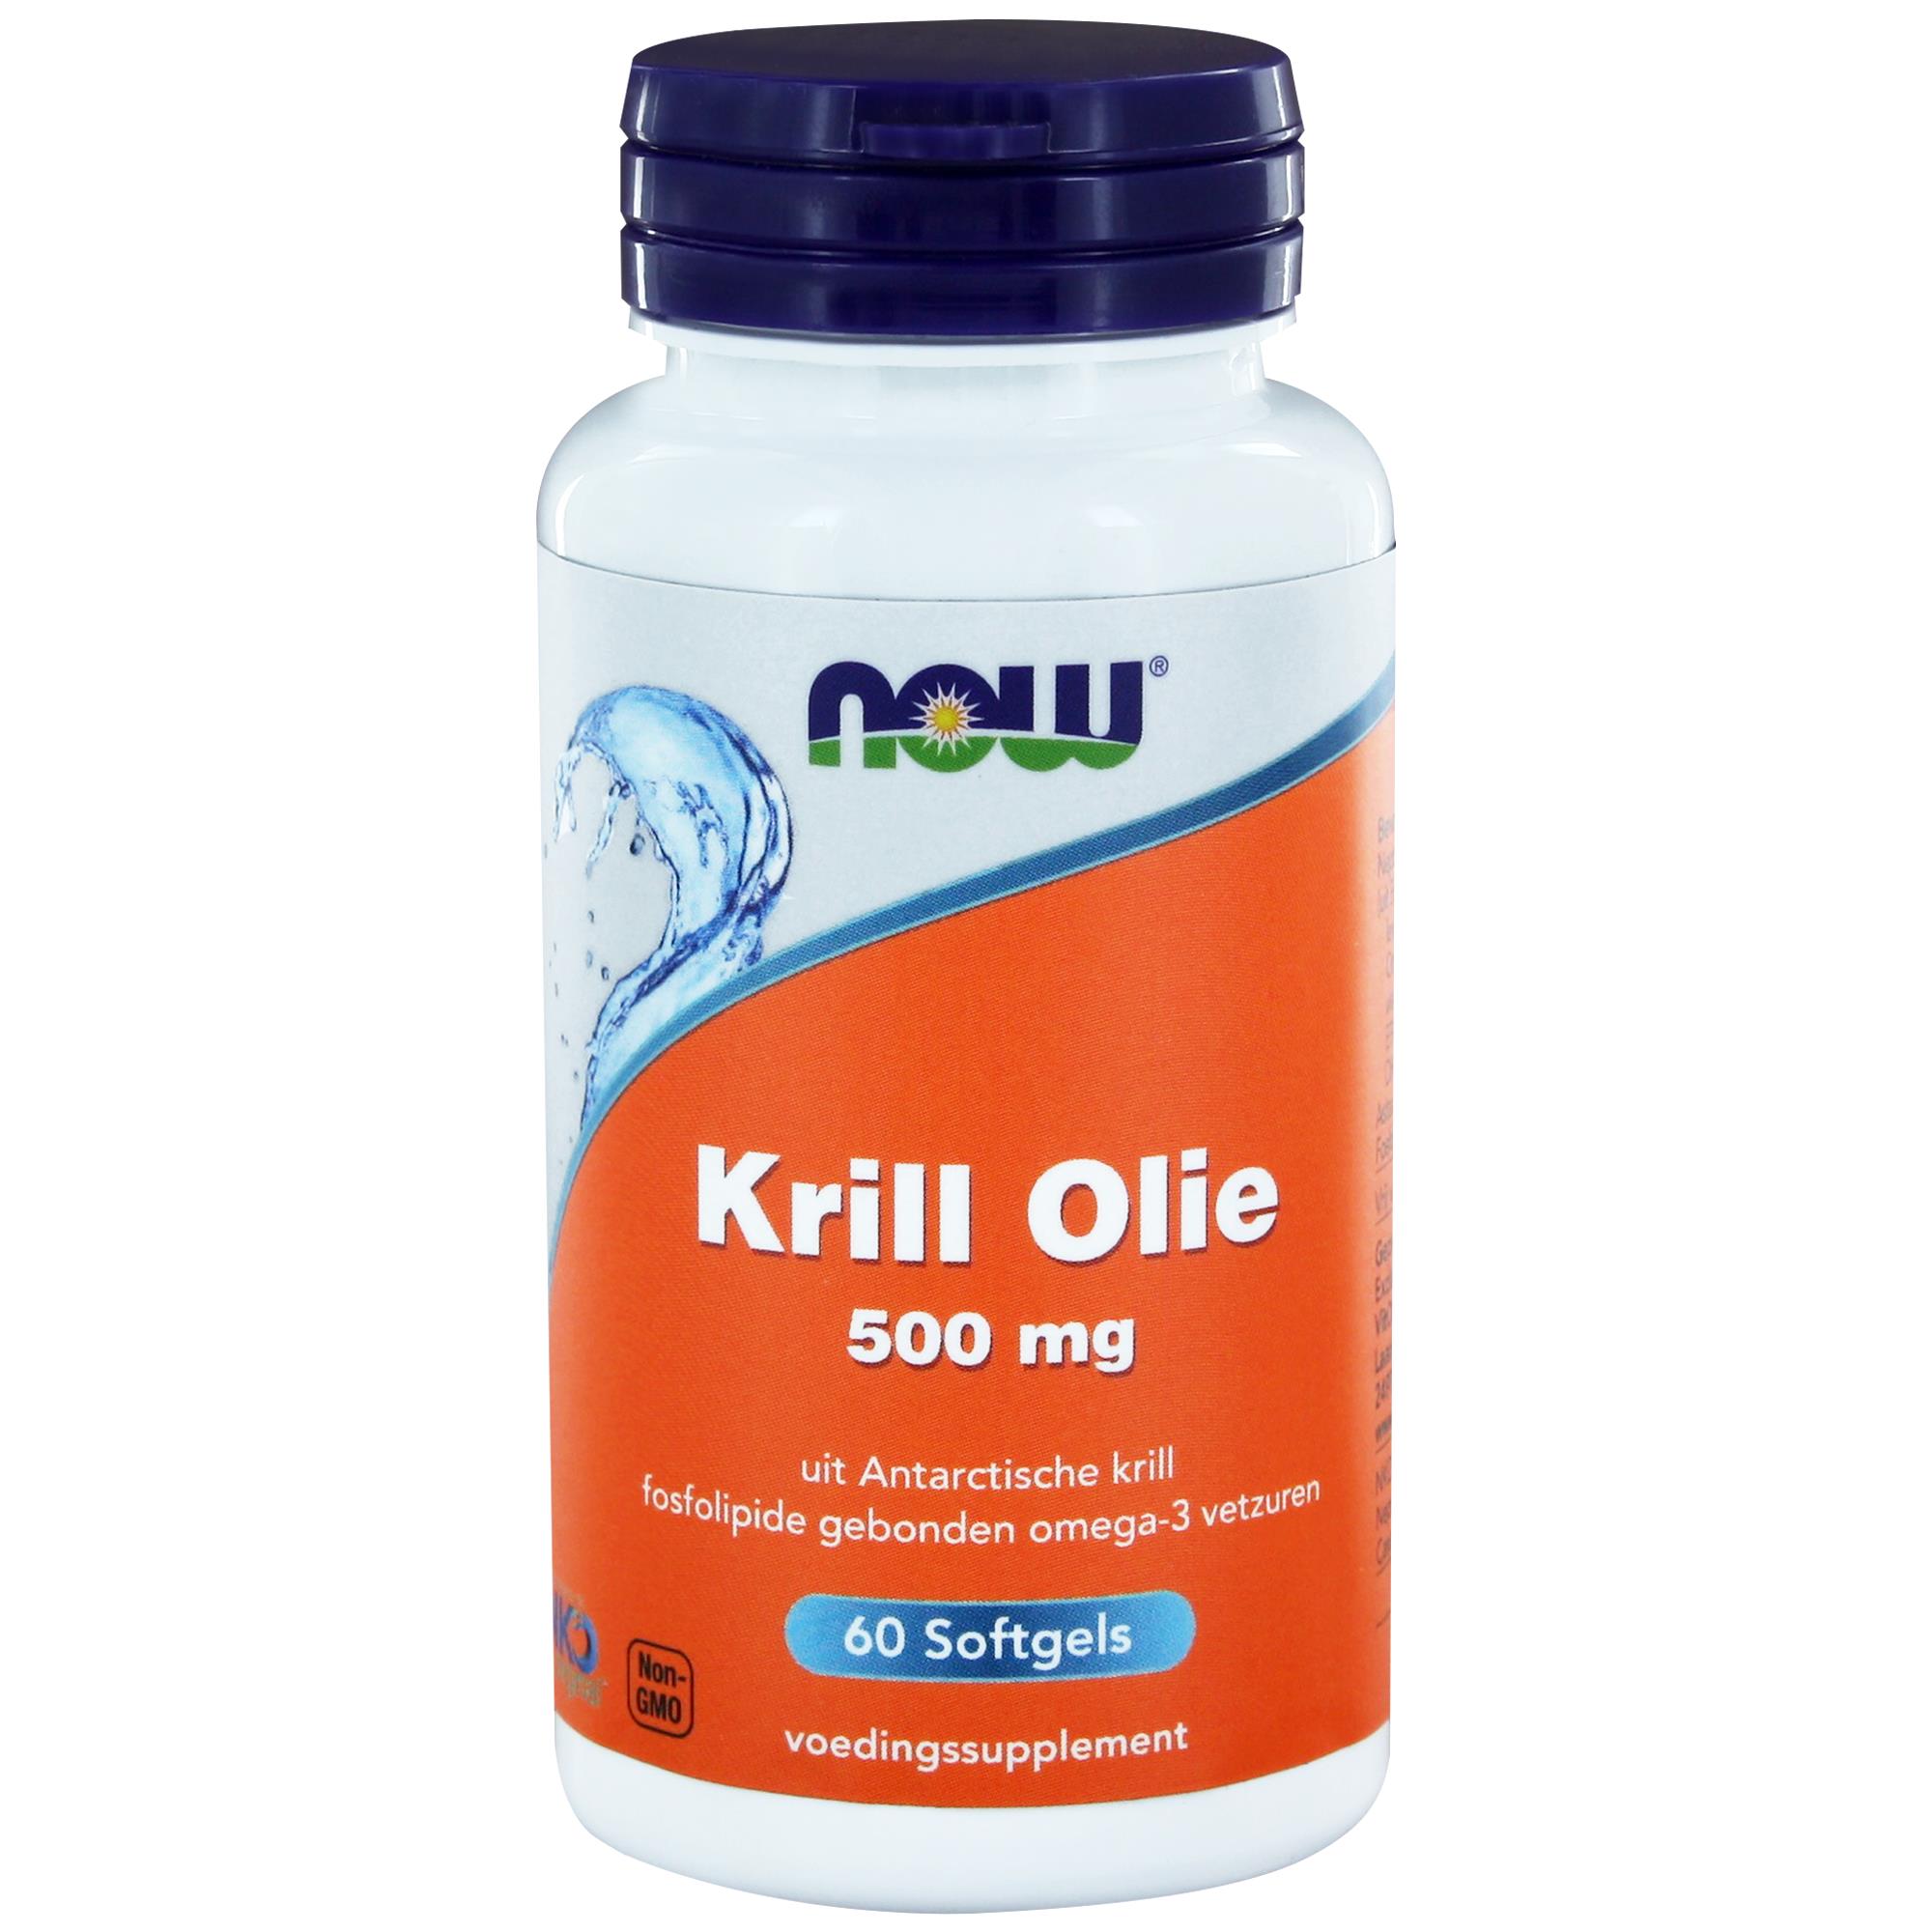 Krill Olie (500 mg) - 60 softgels